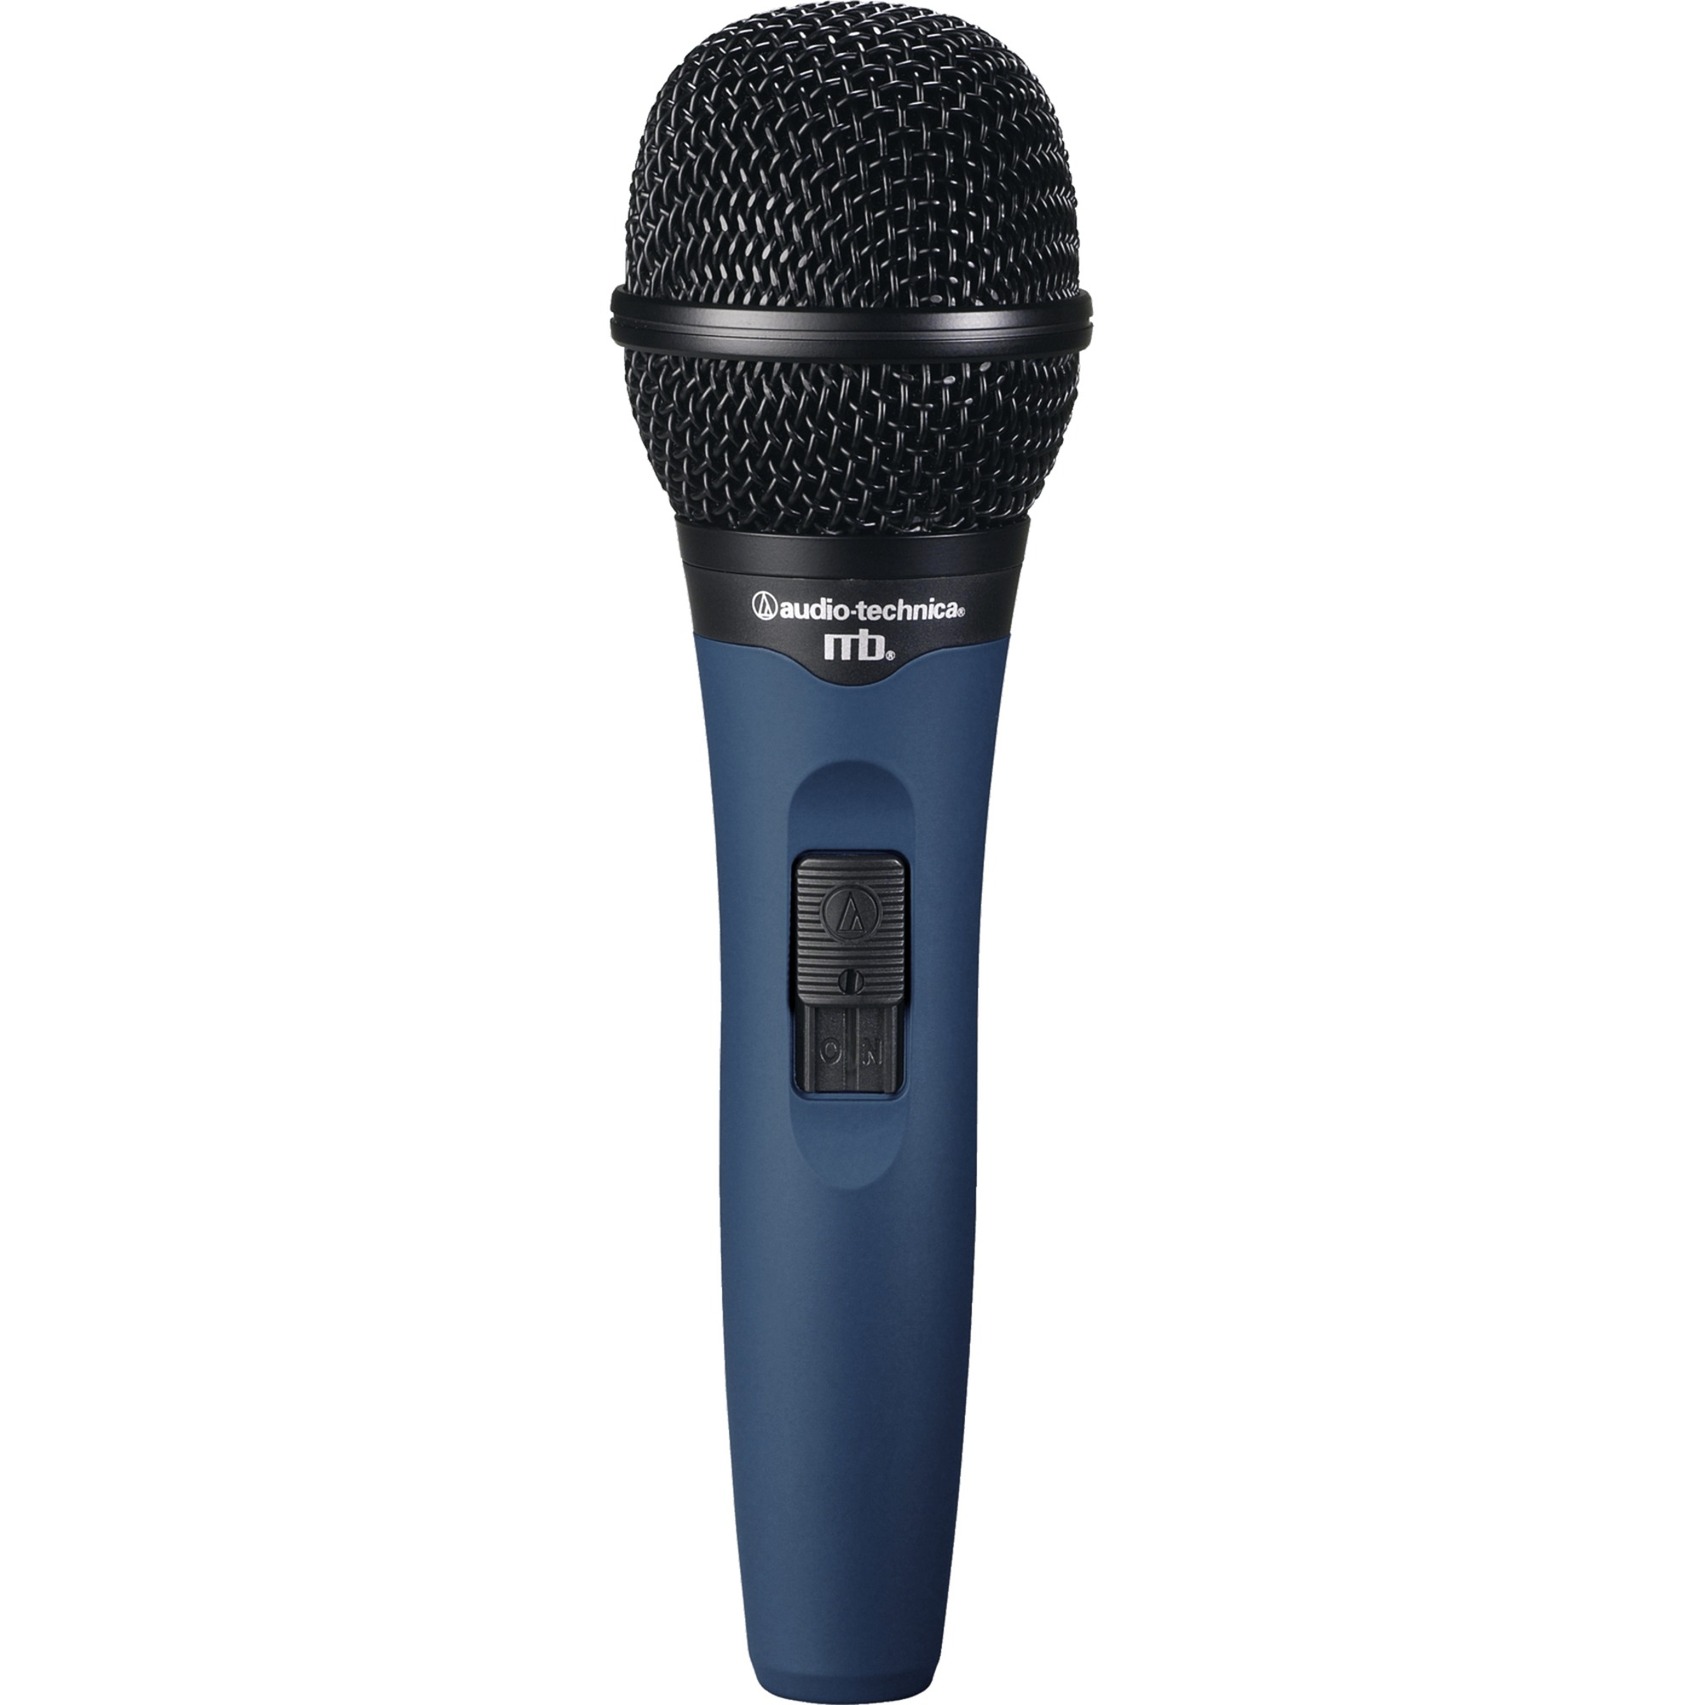 Image of Alternate - MB3K, Mikrofon online einkaufen bei Alternate